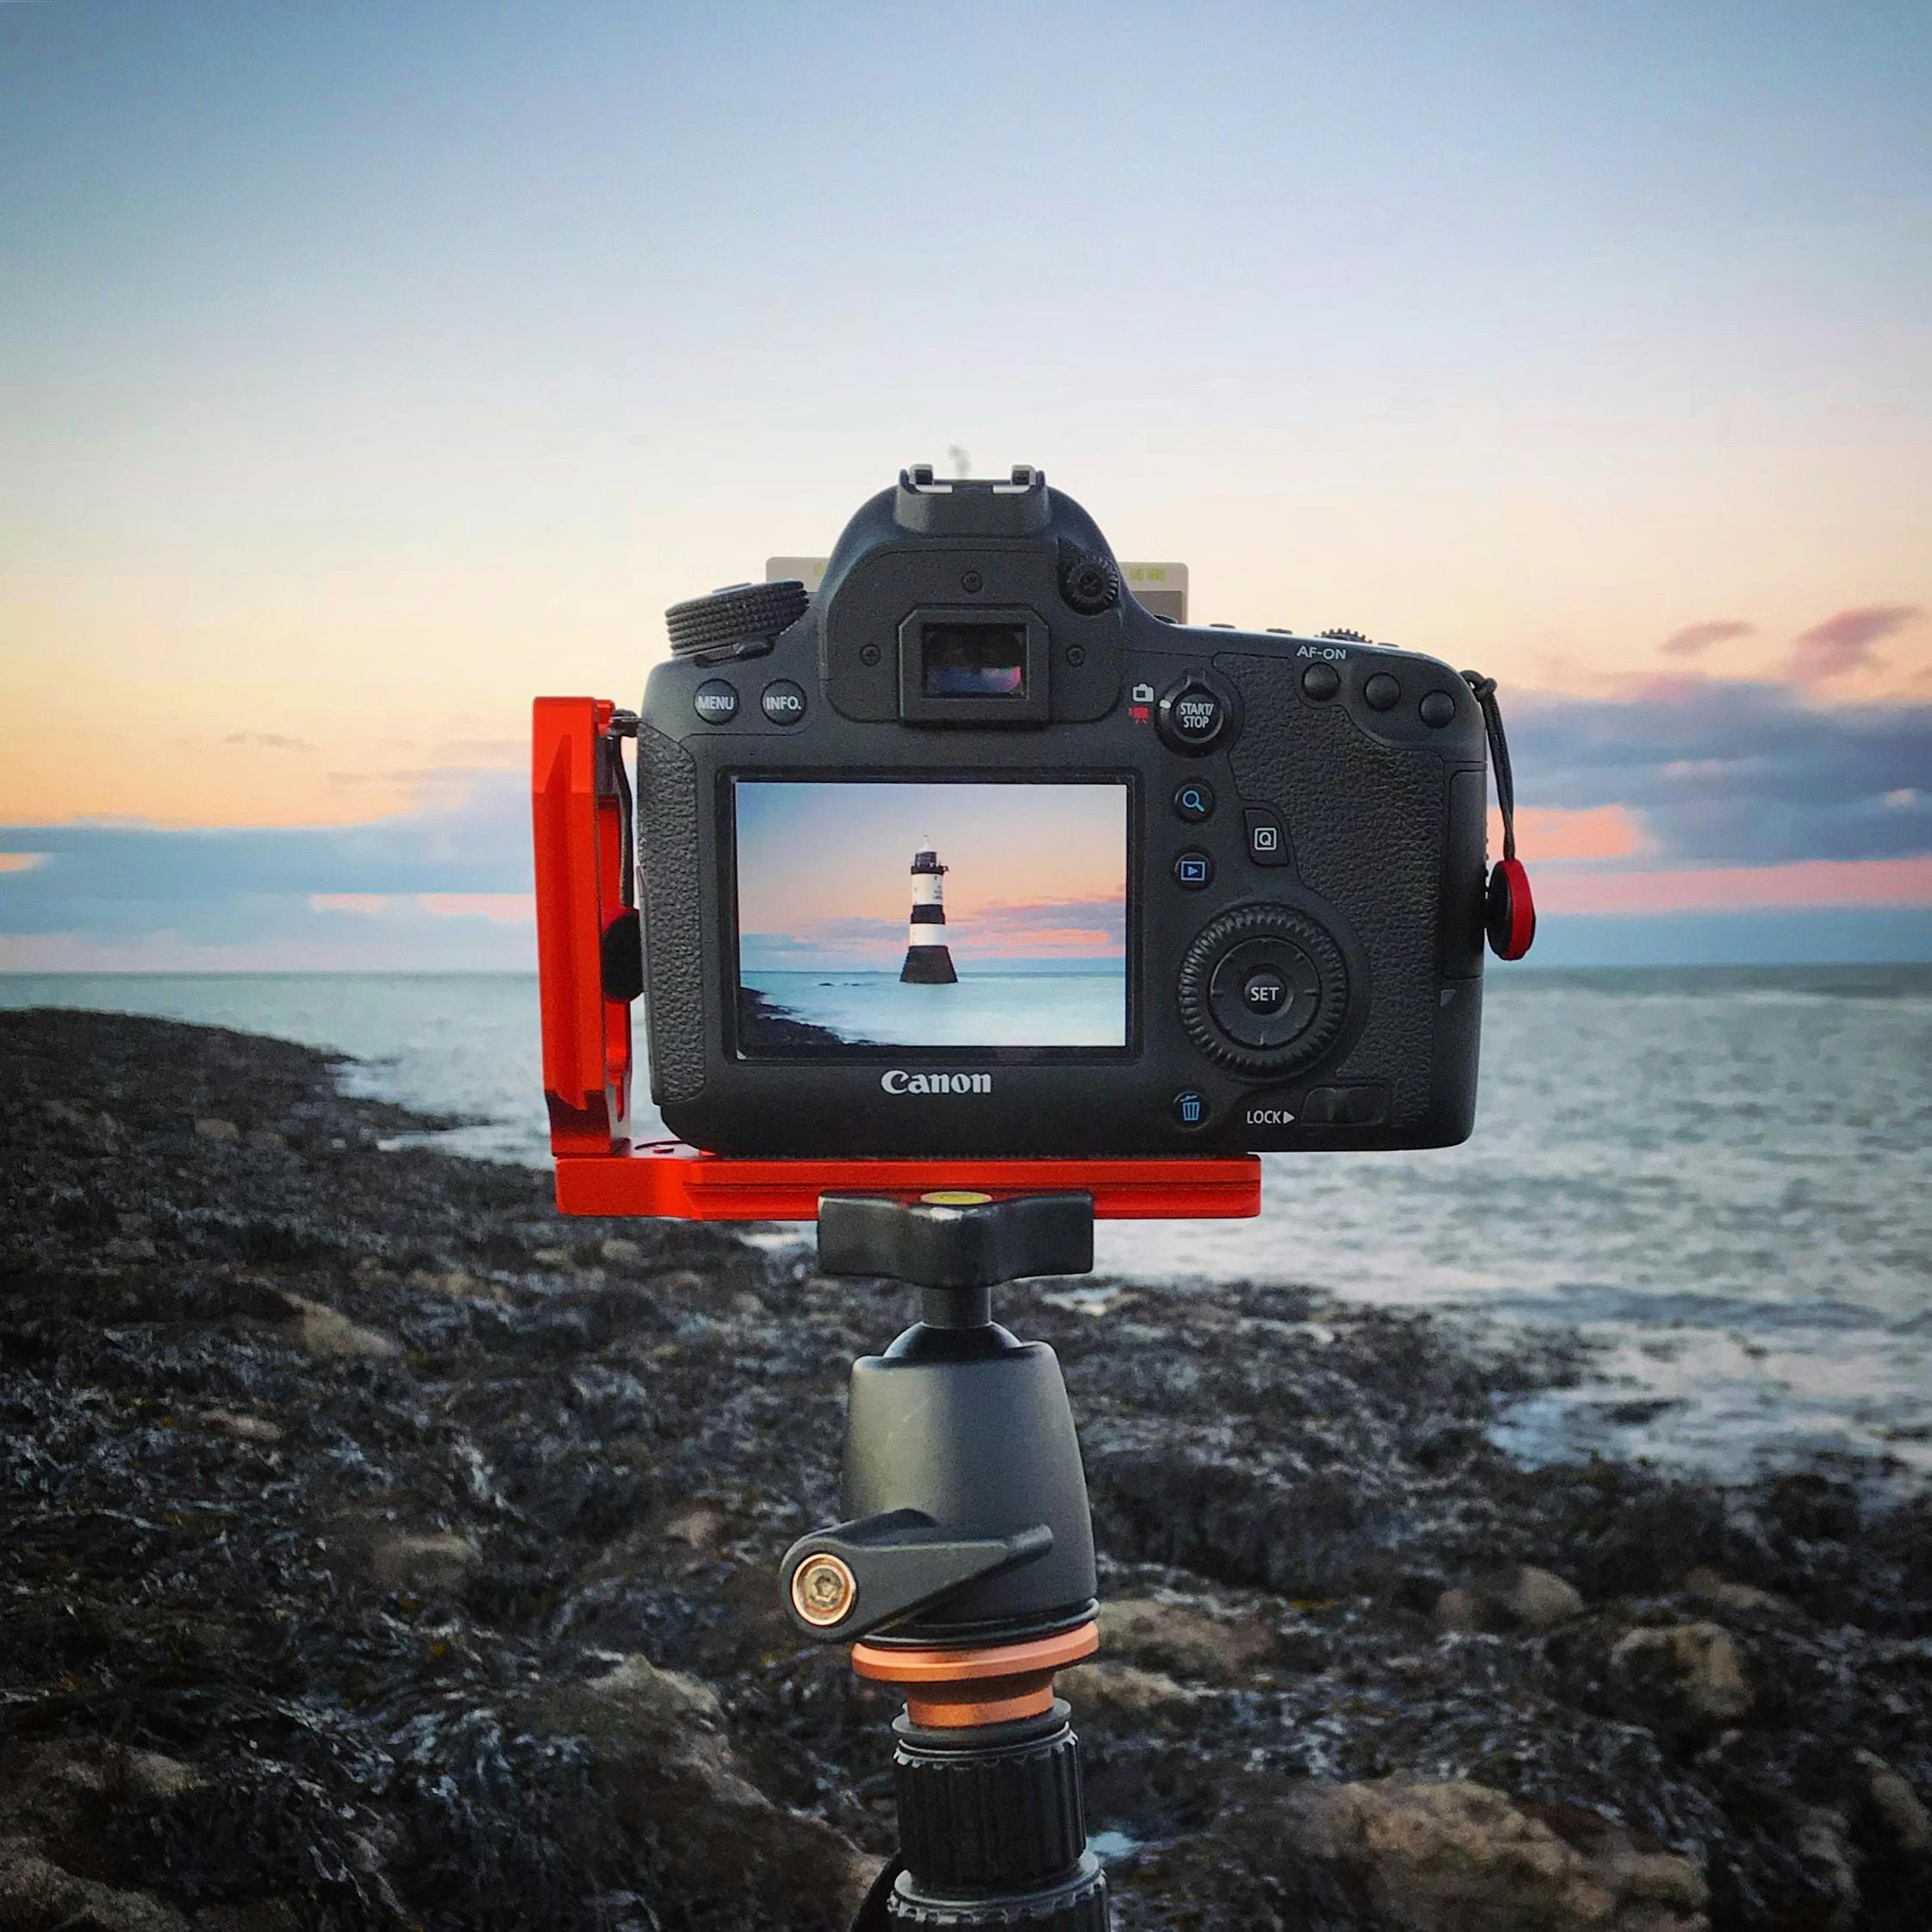 en digitalkamera sitter på ett stativ i en kustnära scen - typer av kameror | digital 